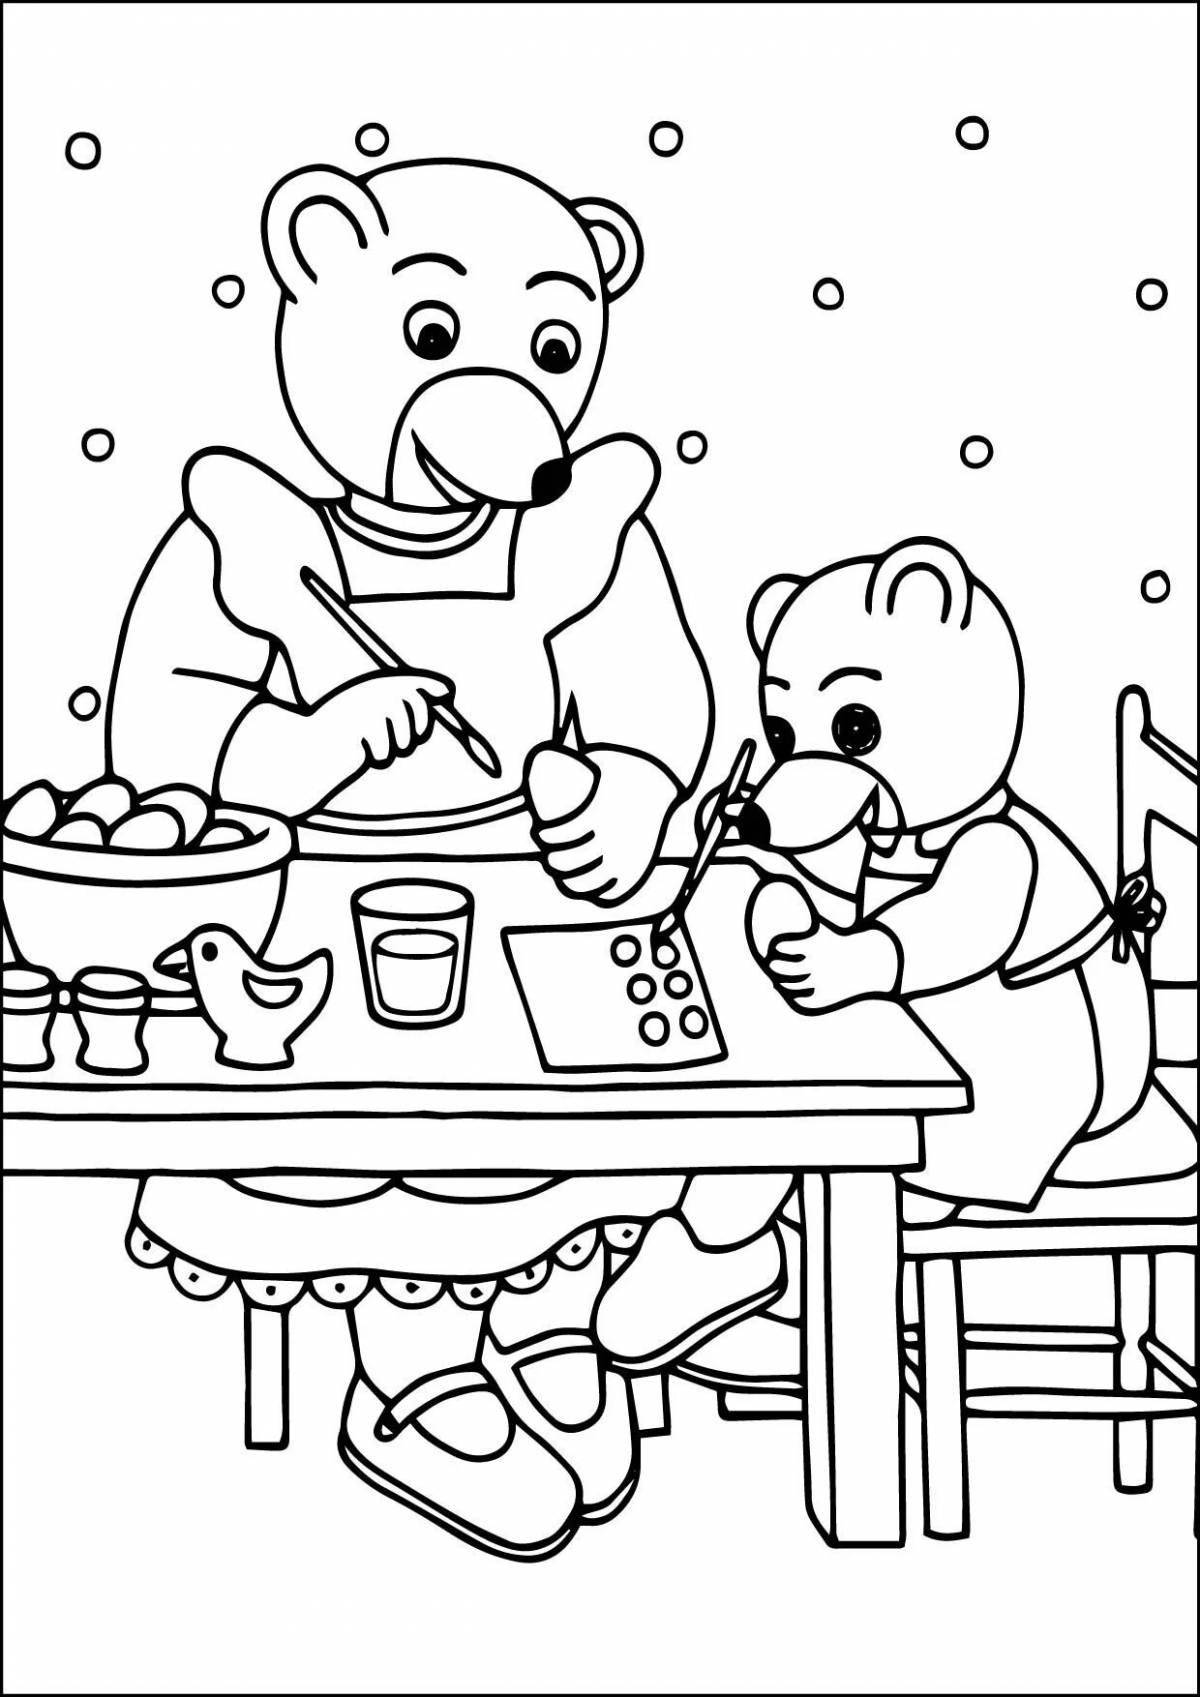 Веселые три медведя раскраски для детей